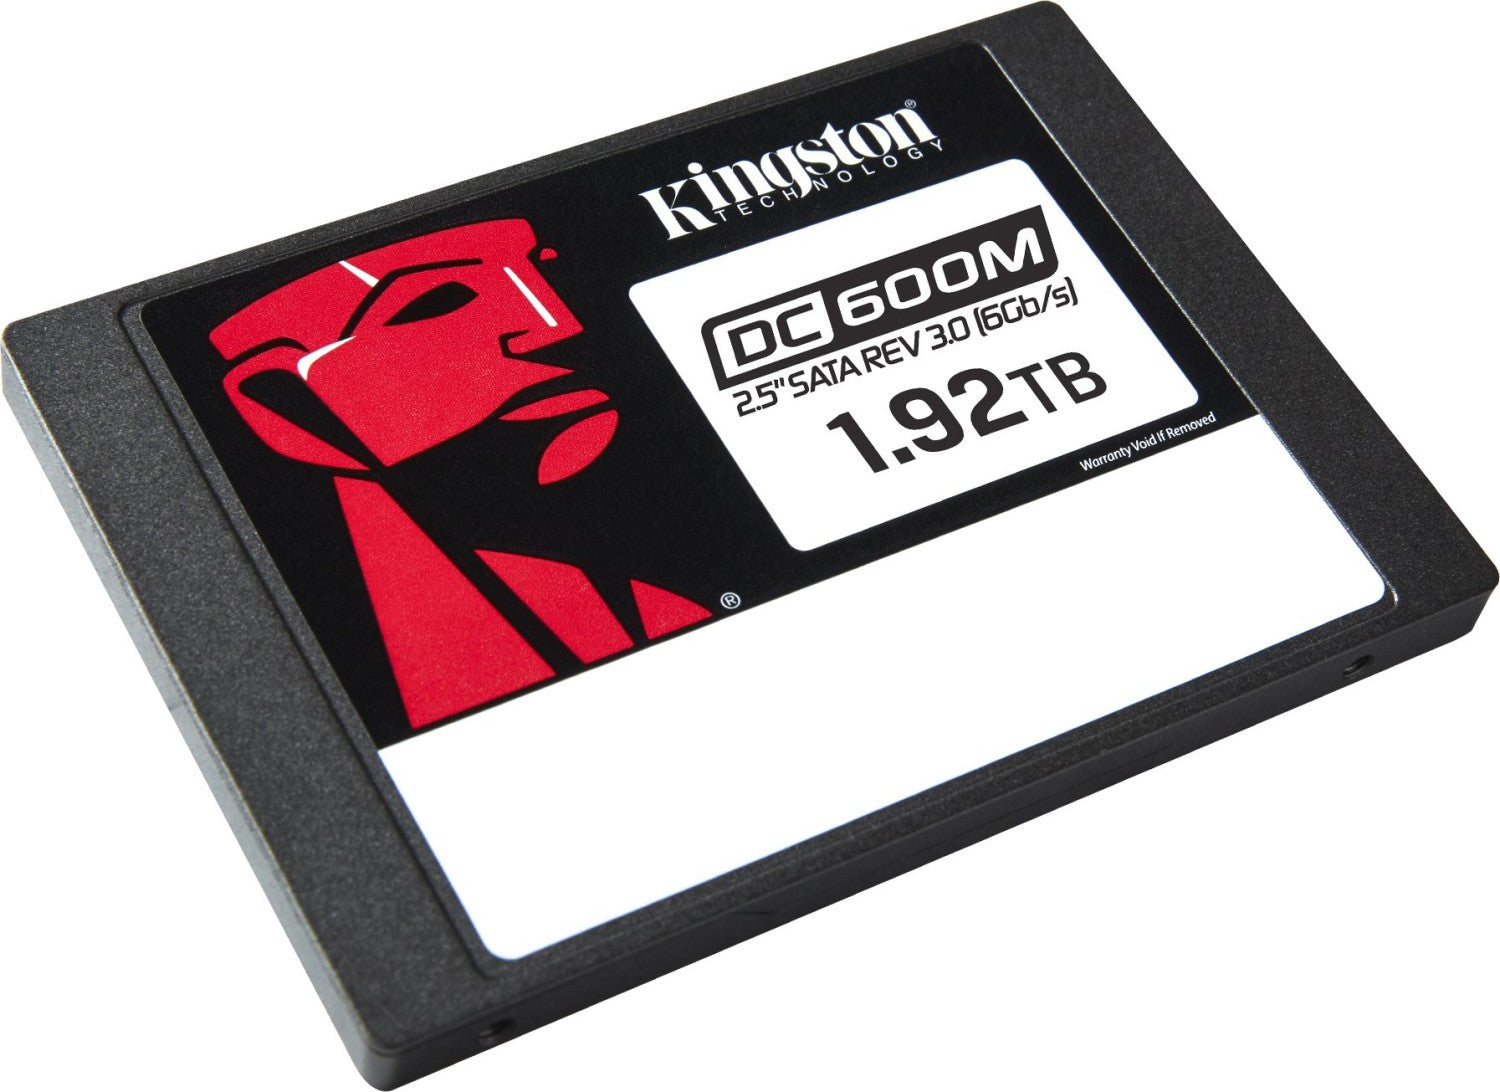 SSD Kingston 1920GB DC600M 2.5" Enterprise